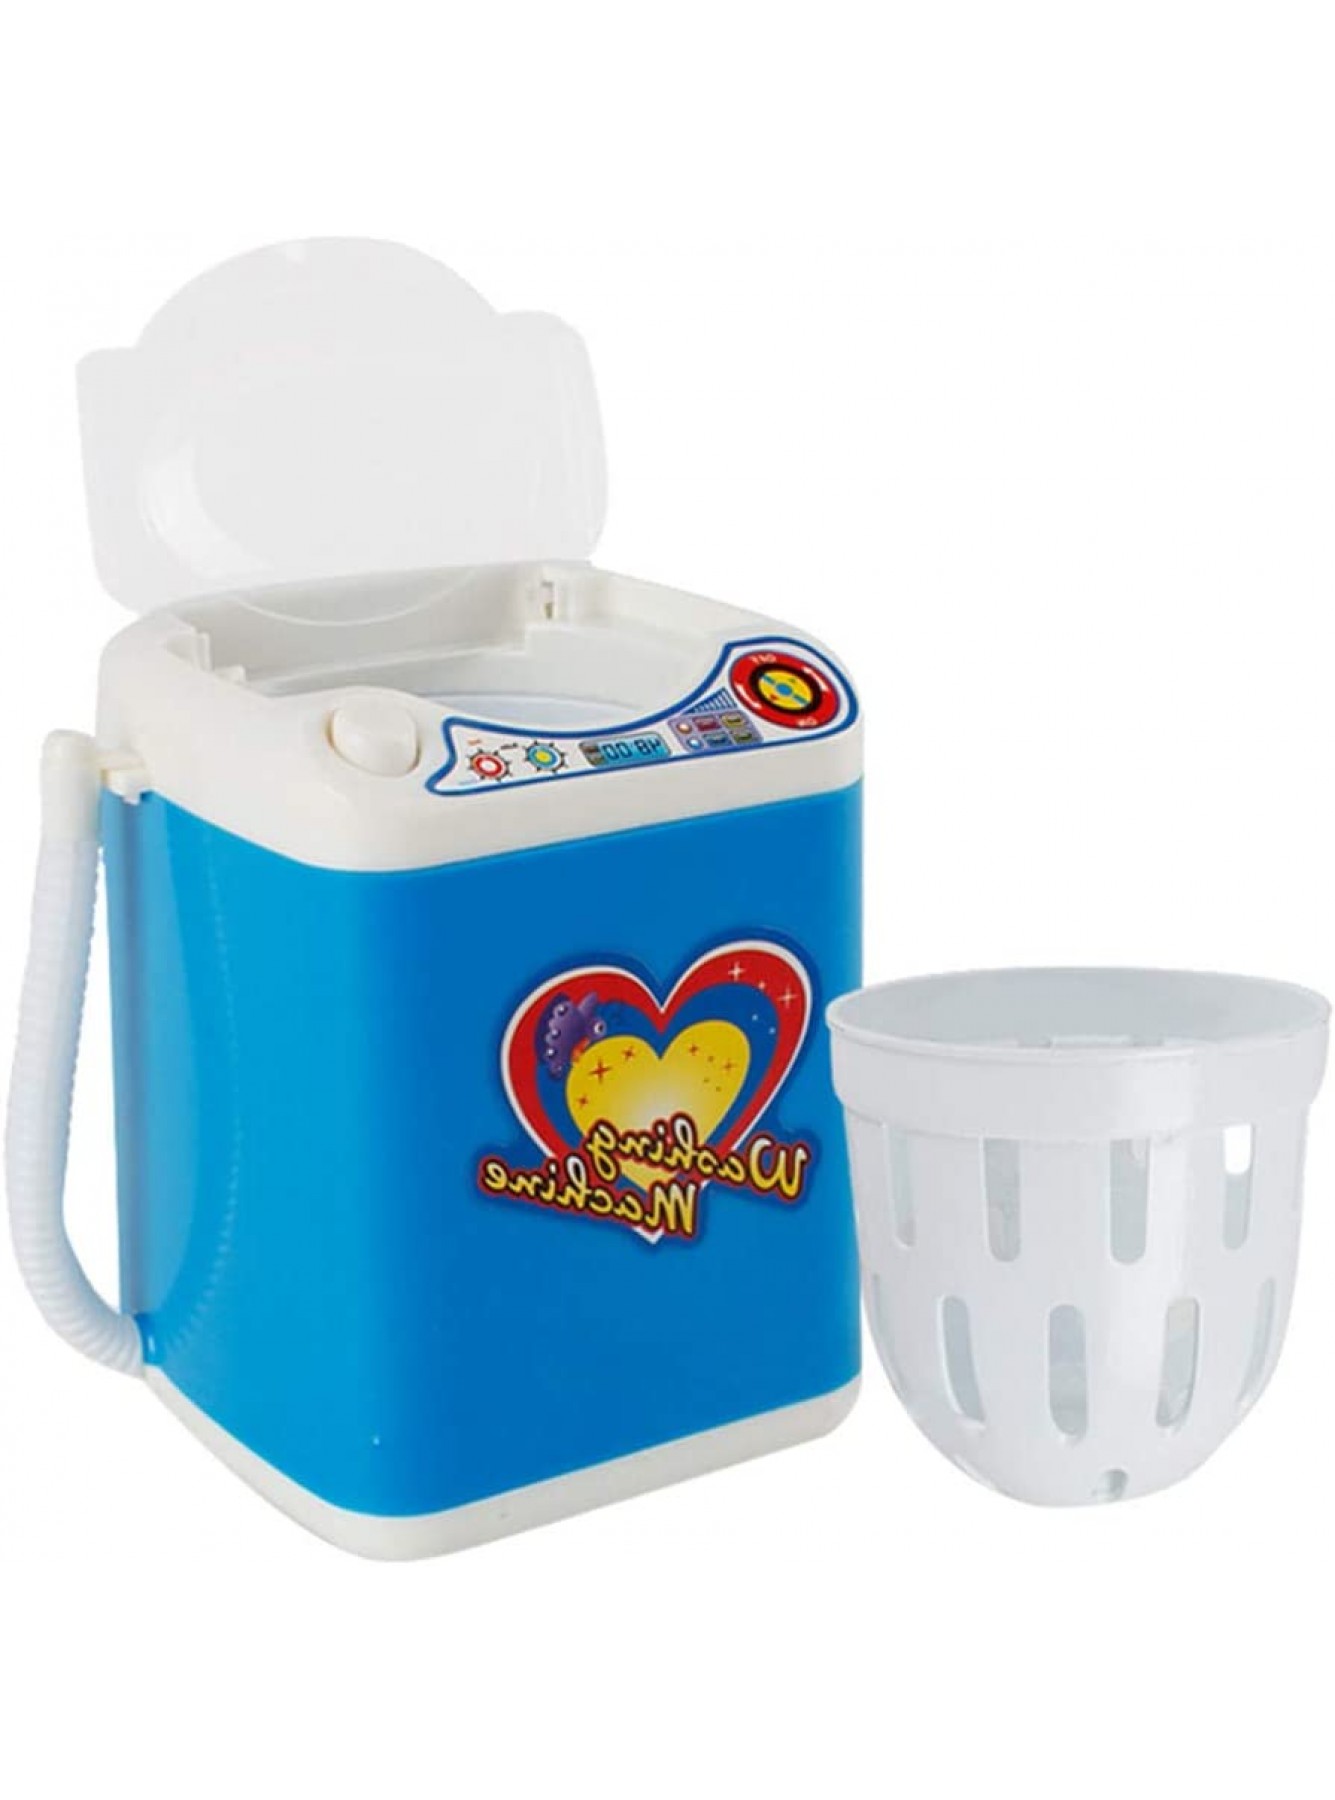 Hukz Kinderwaschmaschine Toy Mini Washing Machine Miniatur Wäsche Spielset Waschmaschine Kinder Spielzeug Kinder-Rollenspiele Haushaltsspielzeug Makeup Brush Cleaner Device Blau - B07S1FR51Y